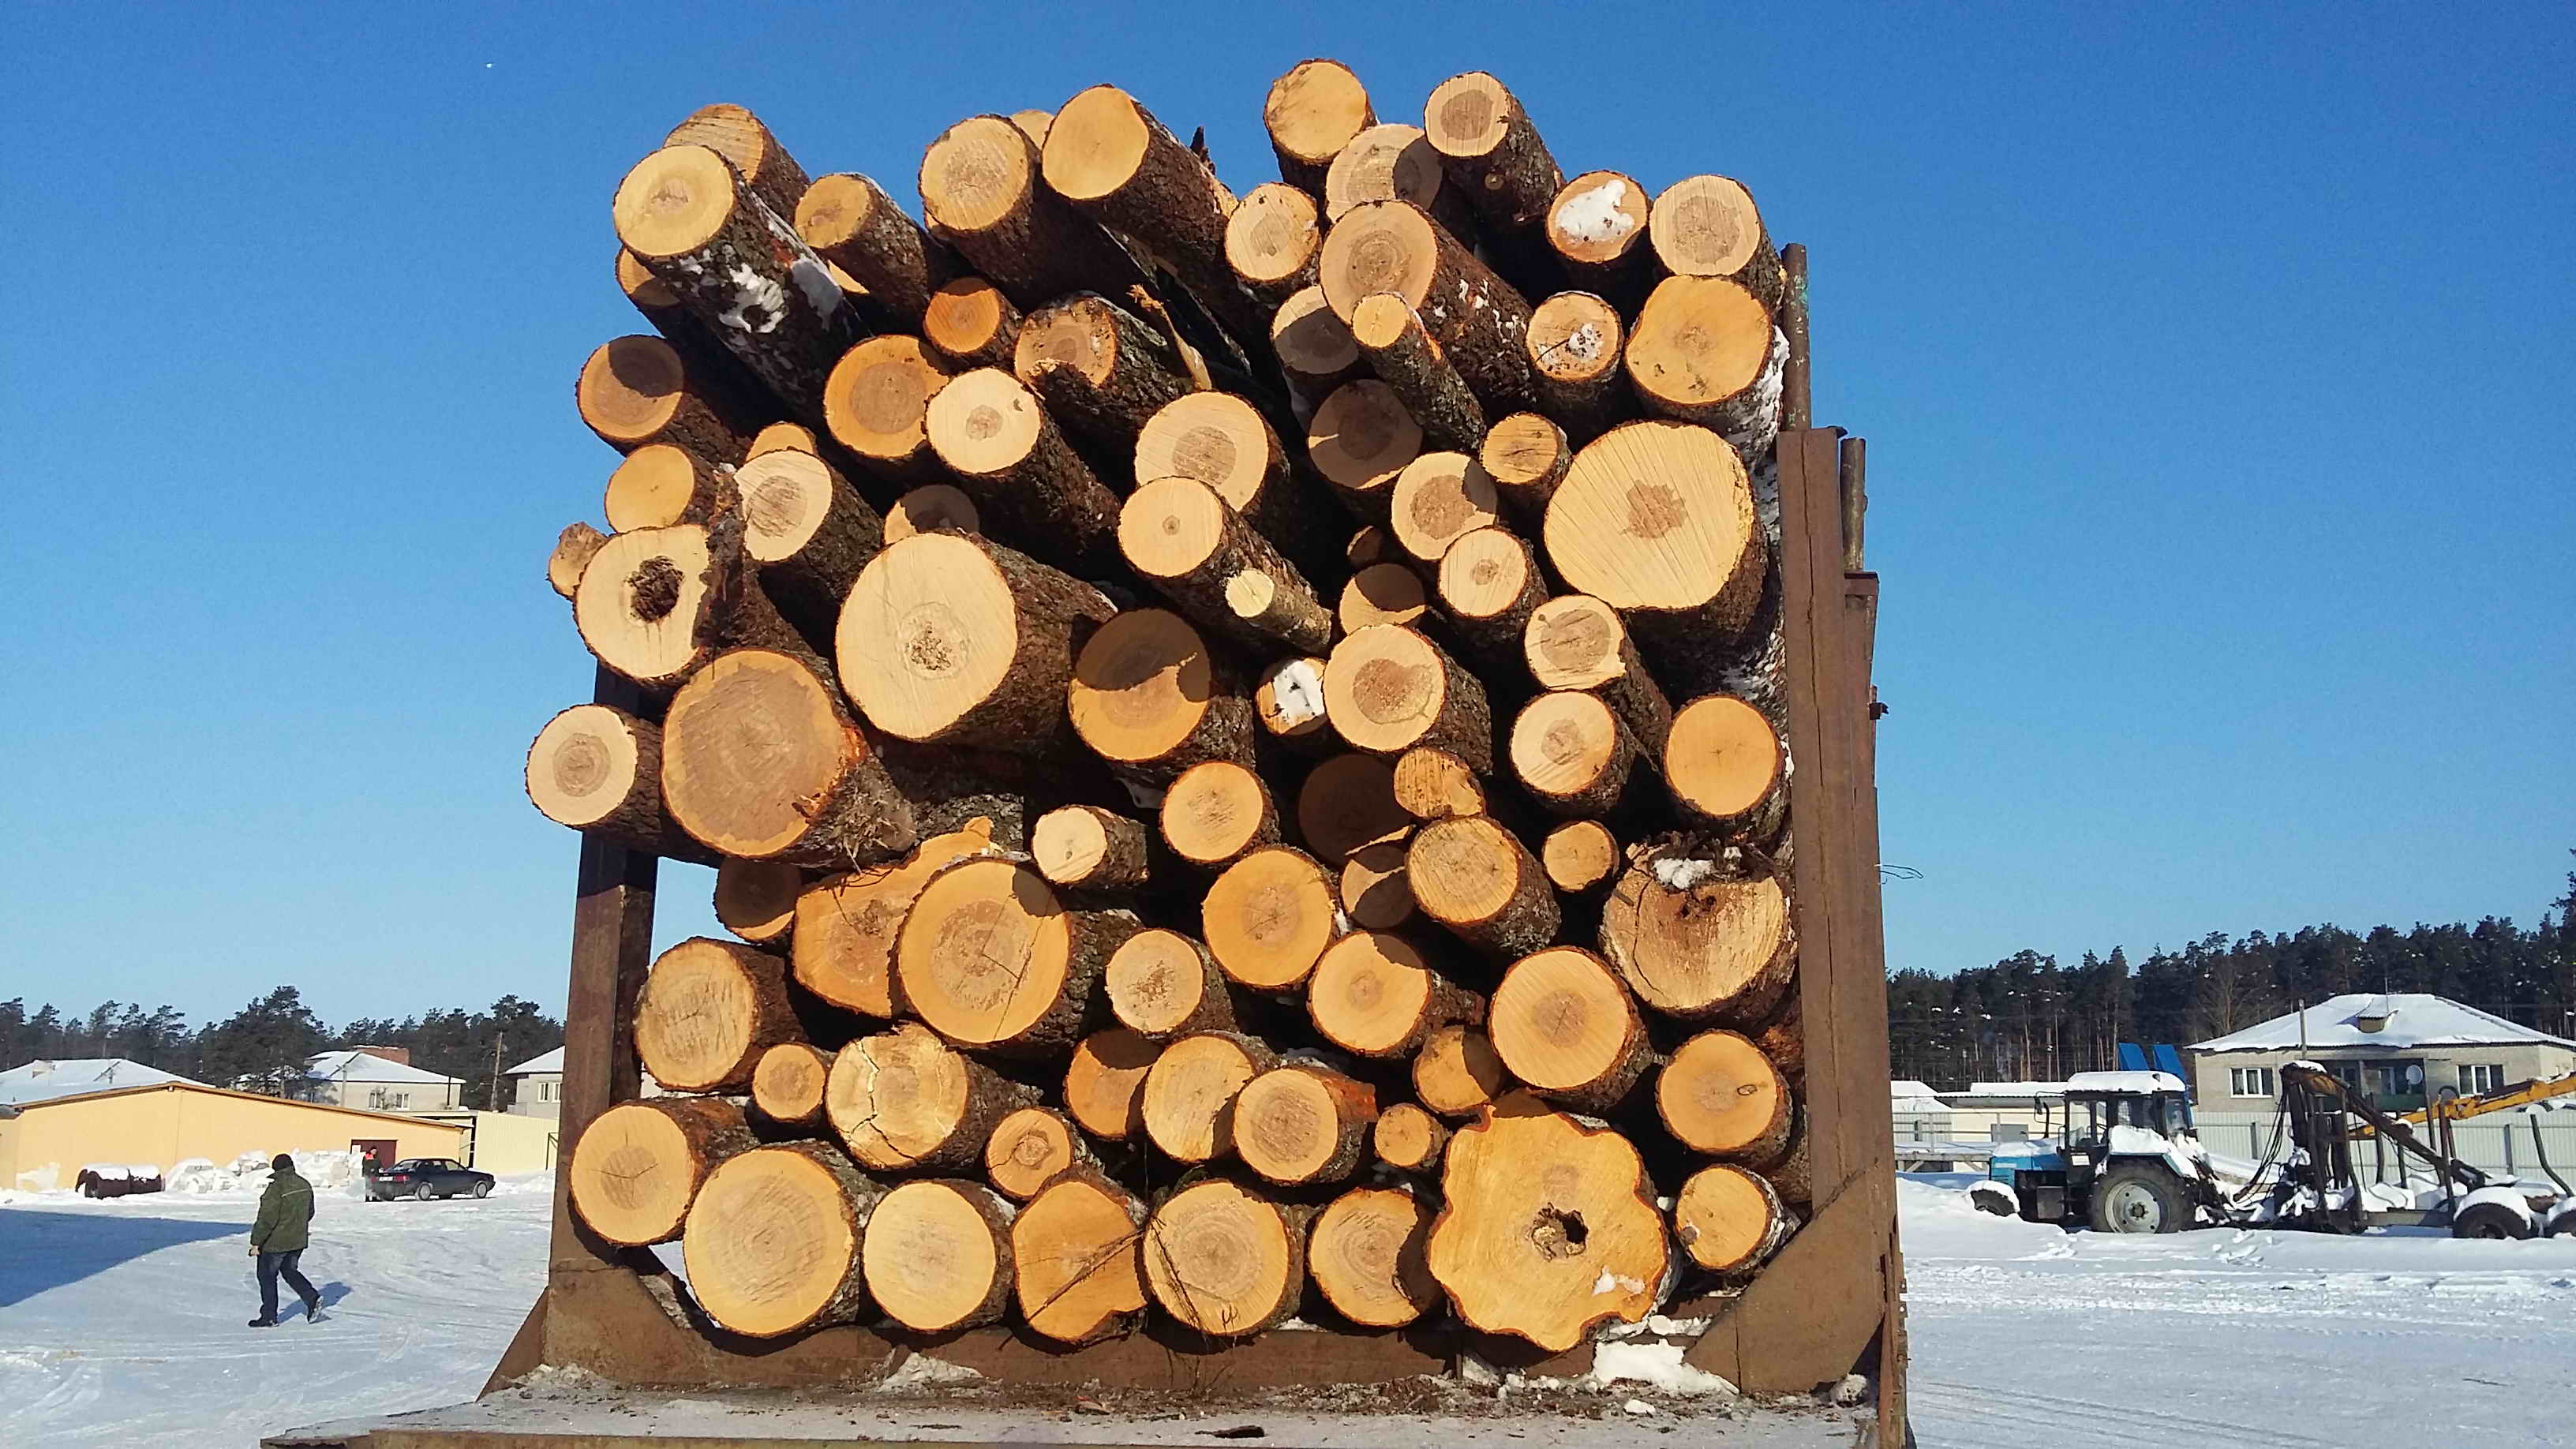 Возбуждены уголовные дела по фактам незаконного оборота древесины, выявленным Комитетом госконтроля Могилевской области в Кличевском лесхозе.